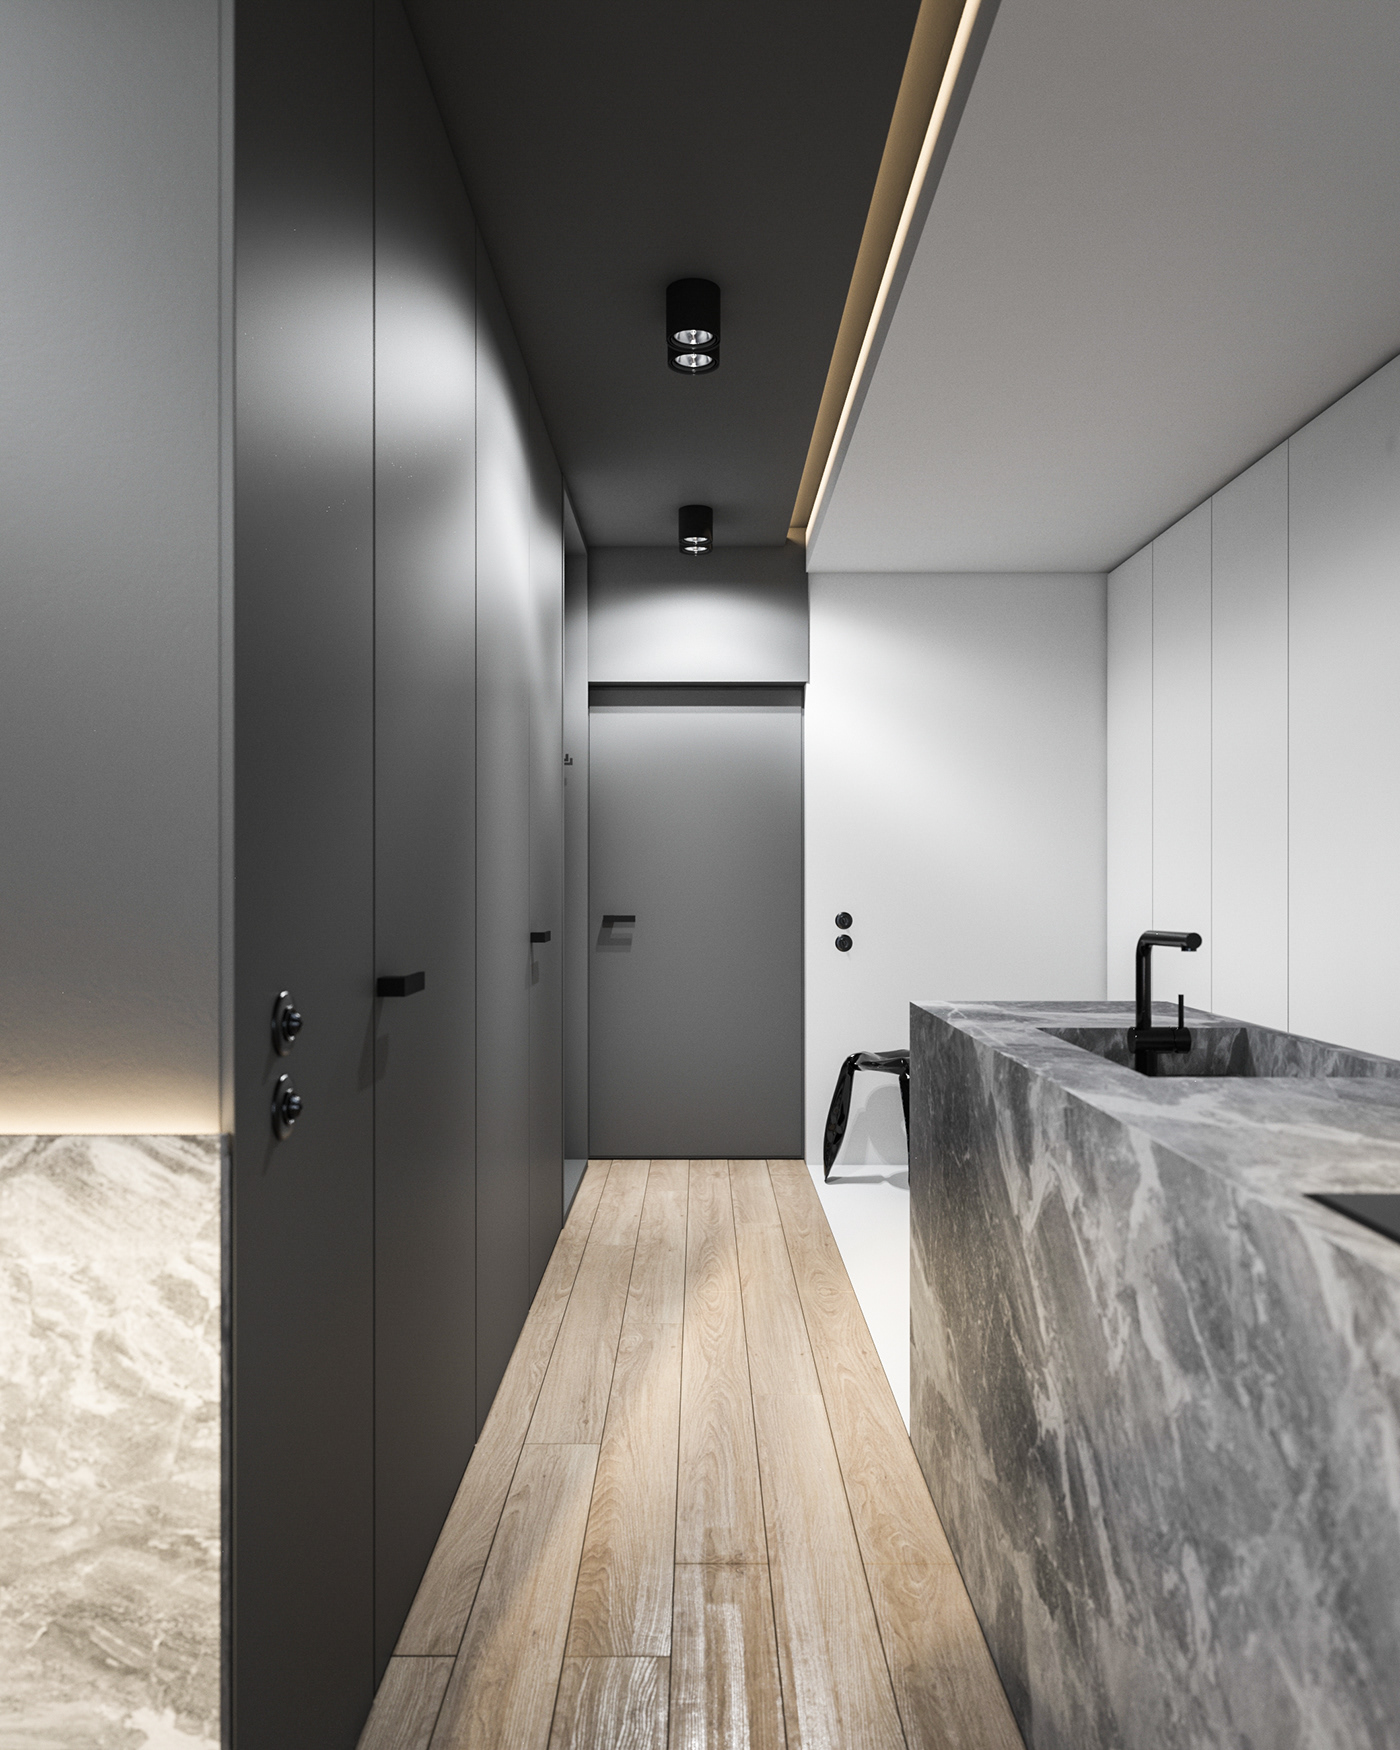 3D apartment design minimal Render visualziation viz Interior architecture furniture